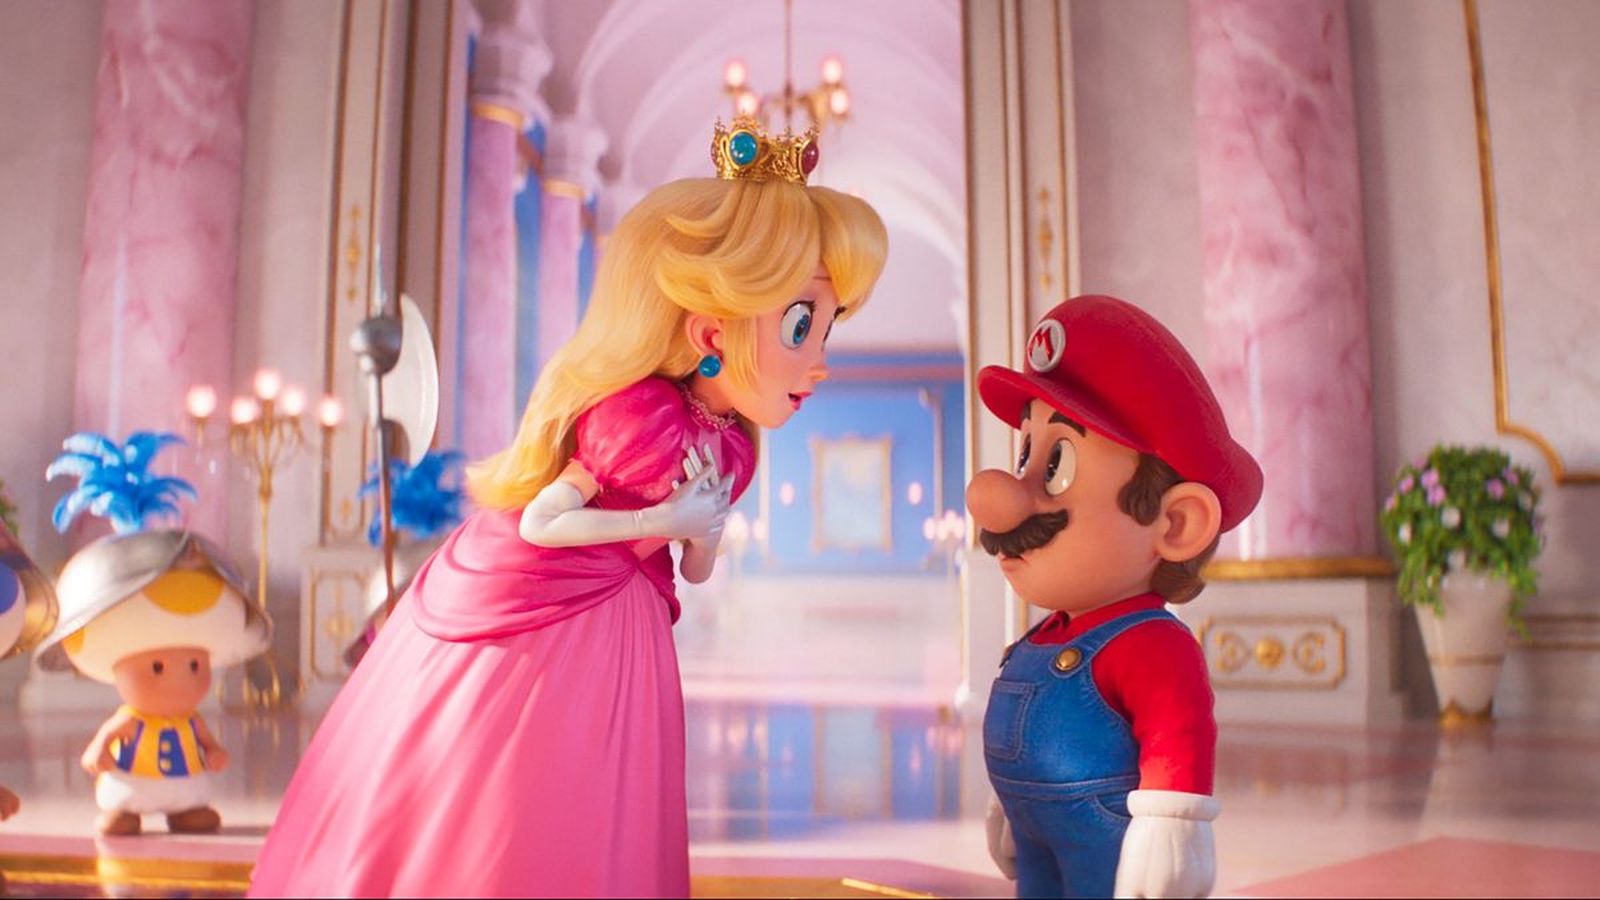 Super Mario Bros. Il Film, svelato il contenuto delle scene post-credits